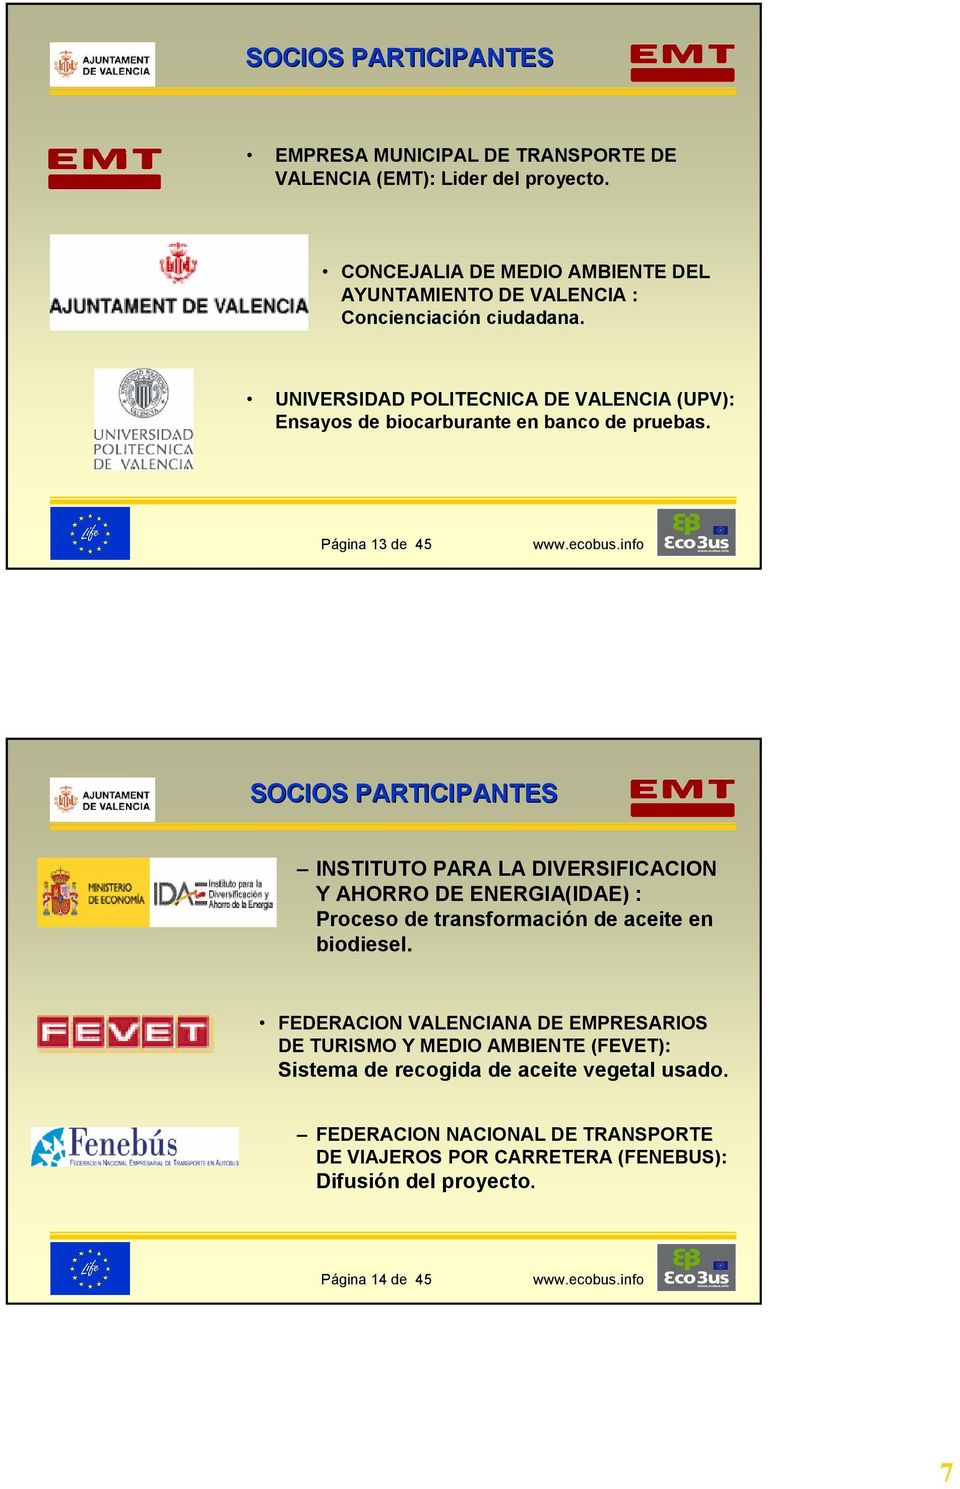 UNIVERSIDAD POLITECNICA DE VALENCIA (UPV): Ensayos de biocarburante en banco de pruebas.